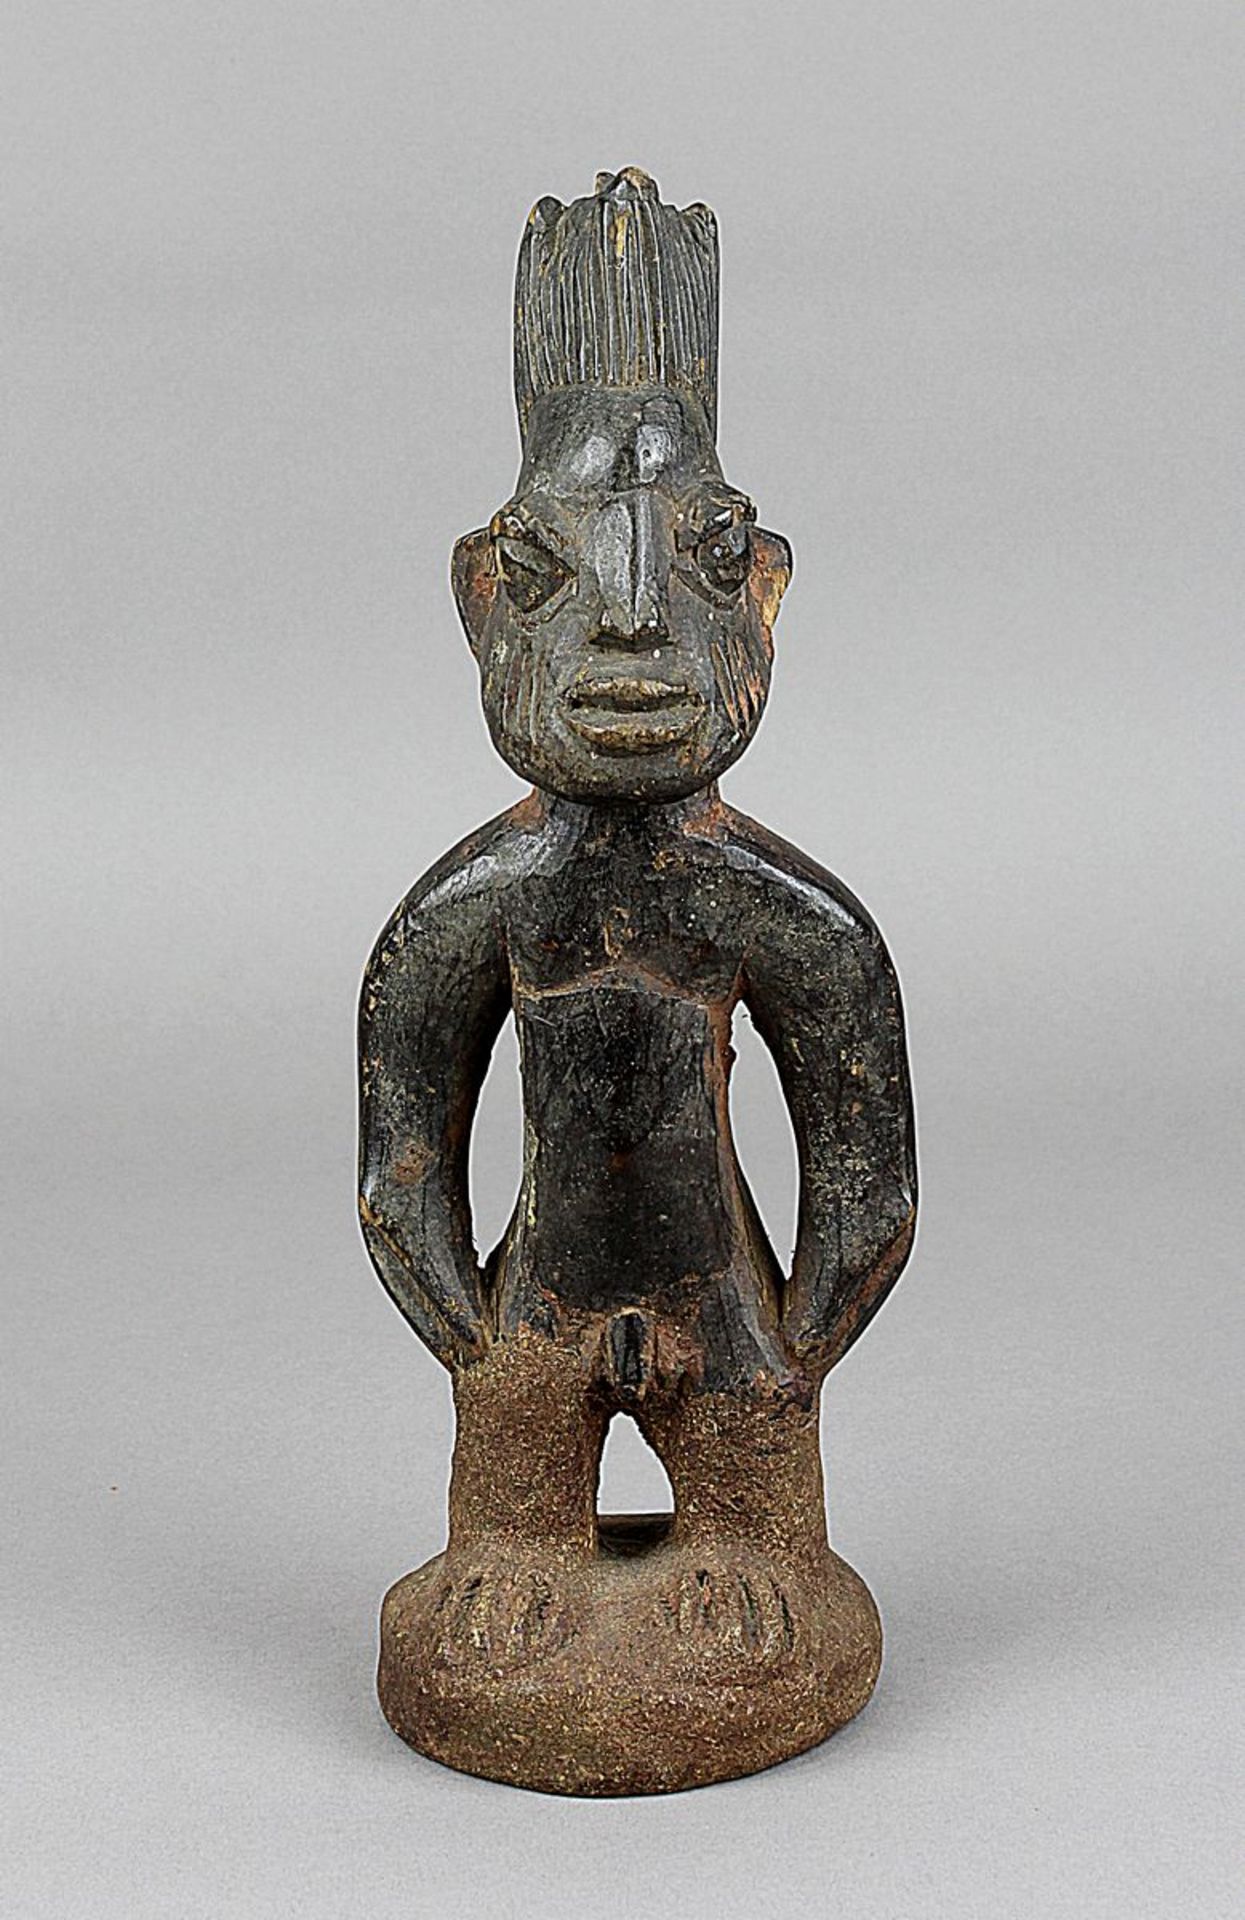 Ibeji Zwillingsfigur, Yoruba, Nigeria, stehende männliche Figur mit leicht nach außen gewinkelten